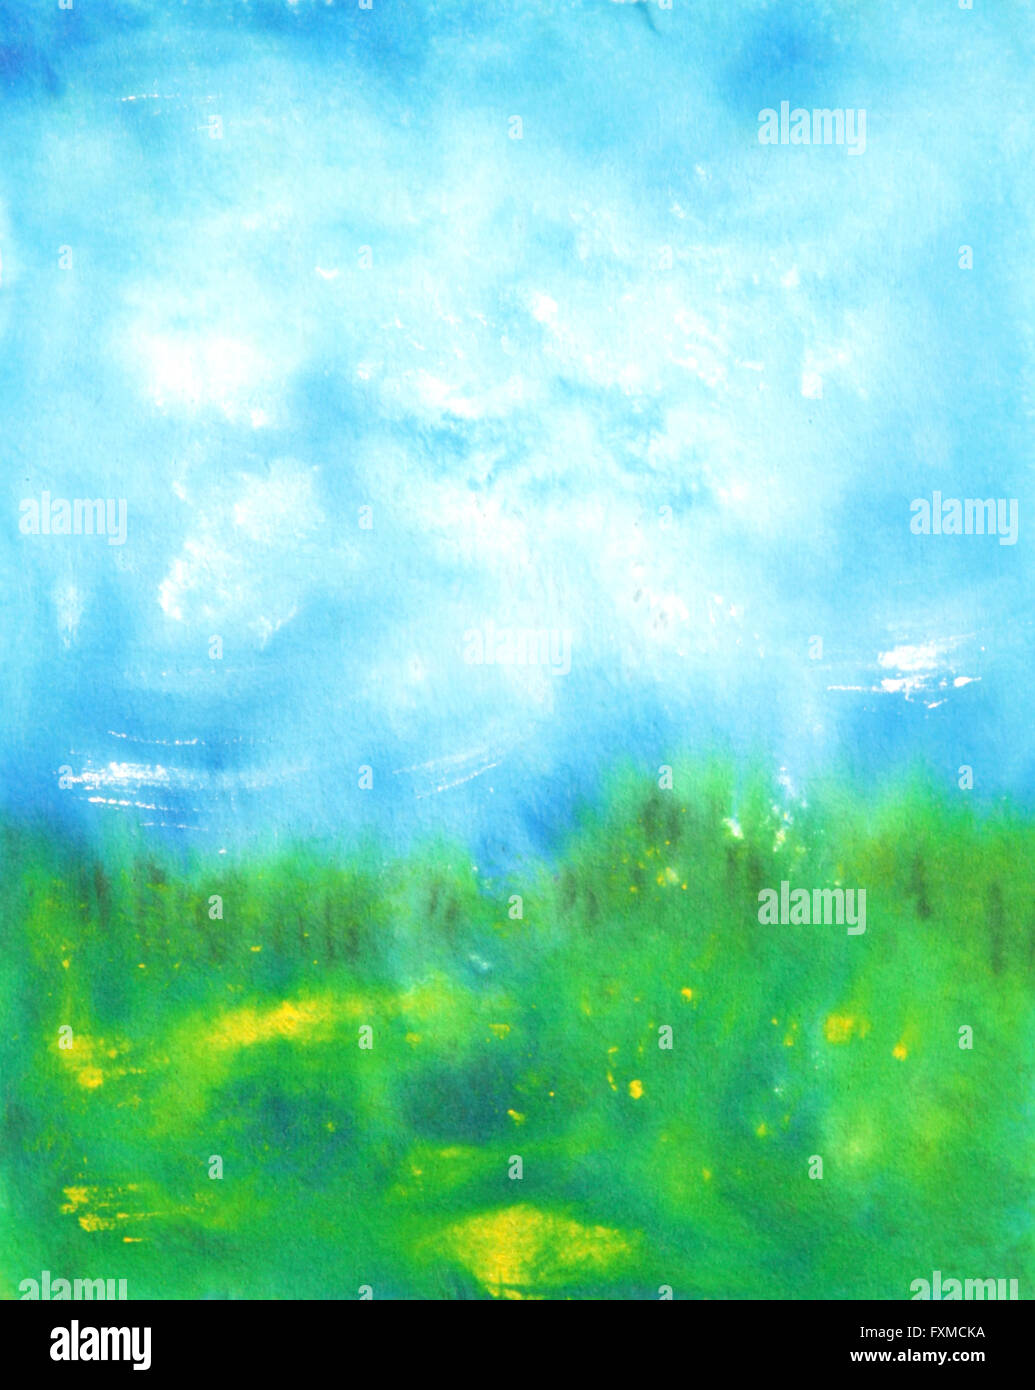 Abstract disegnati a mano sfondo acquerelli: estate paesaggio con cielo blu, verde erba e piccoli fiori gialli. Ottimo per le textures, vintage design e carta da parati di lusso Foto Stock